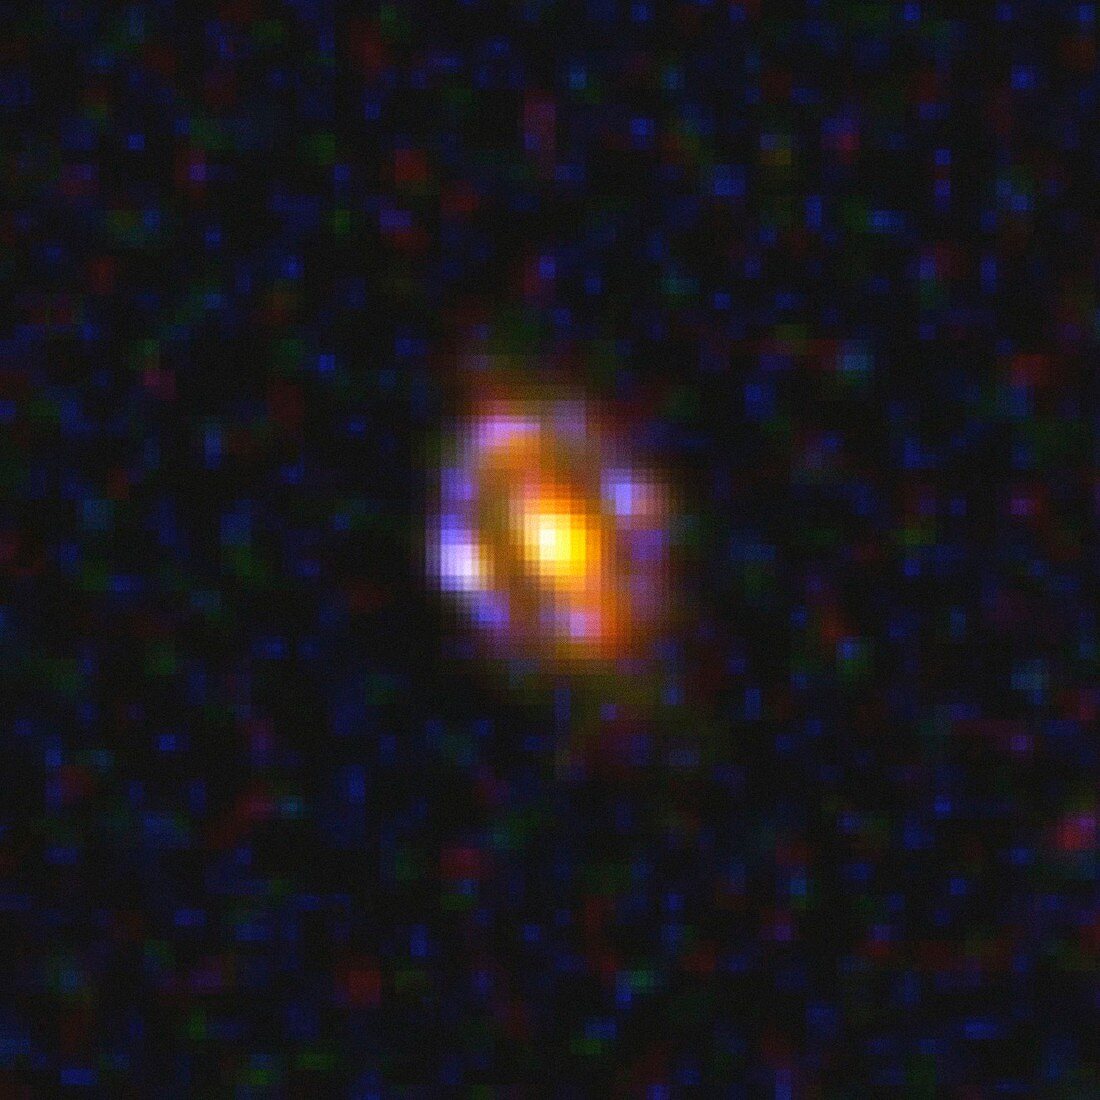 Distant gravitational lens,Hubble image